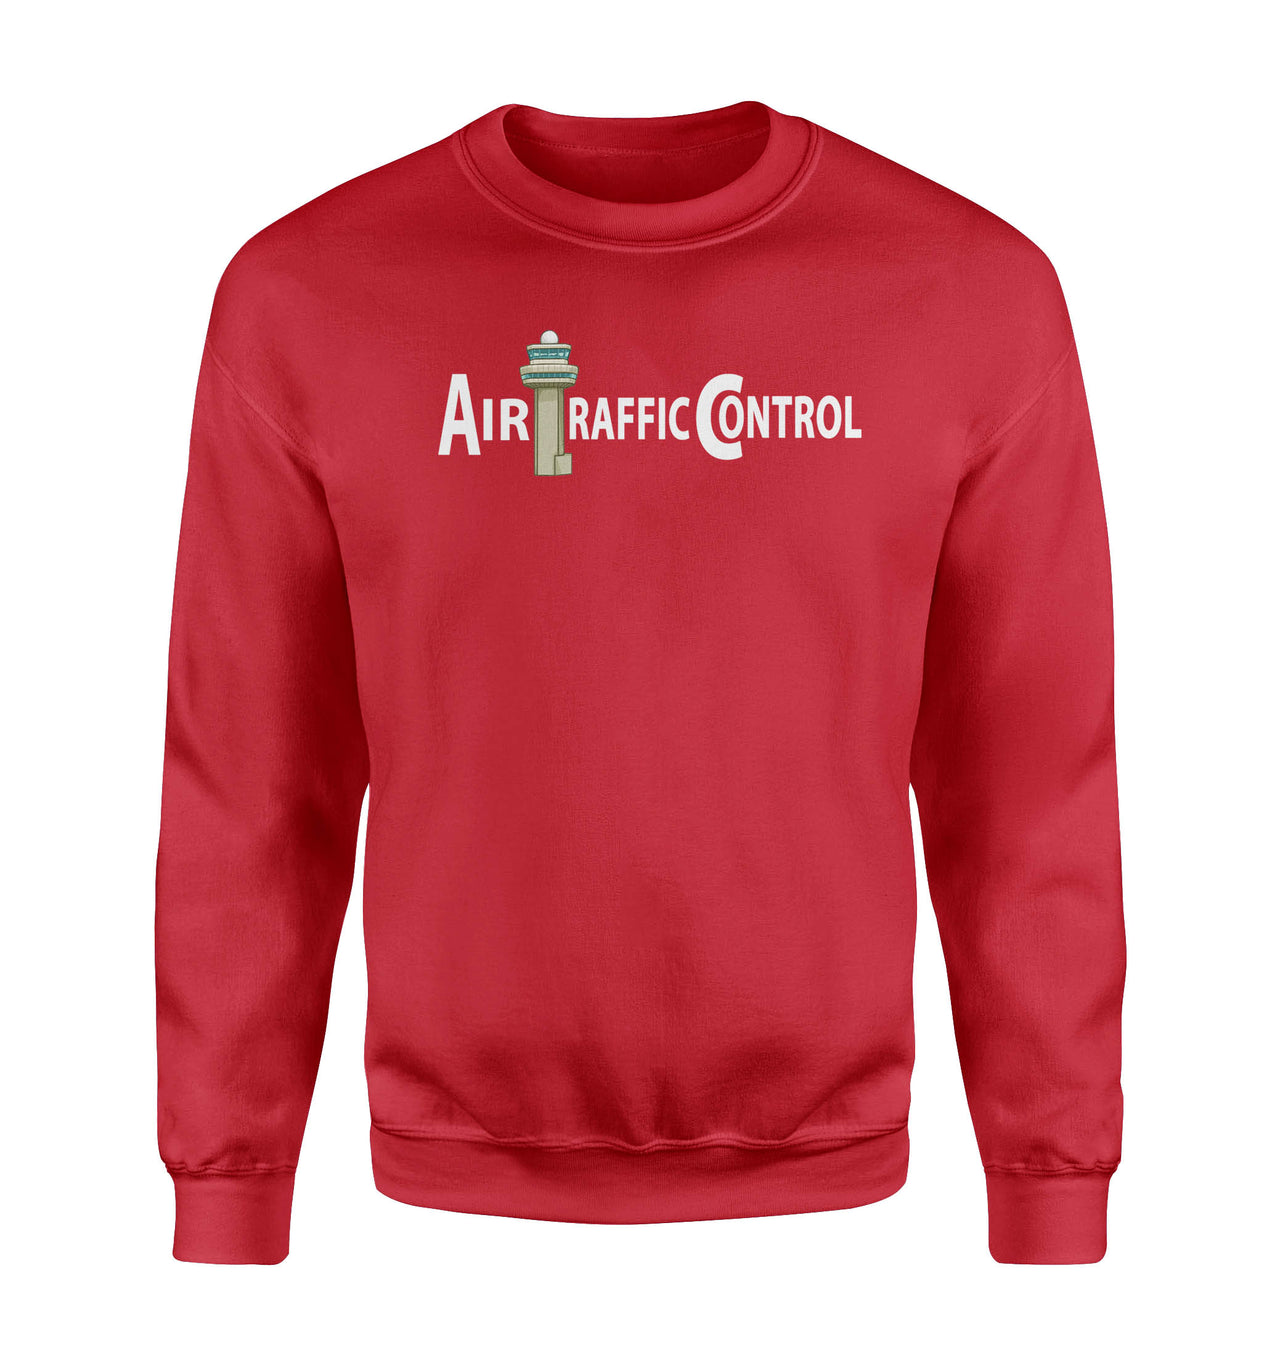 Air Traffic Control Designed Sweatshirts